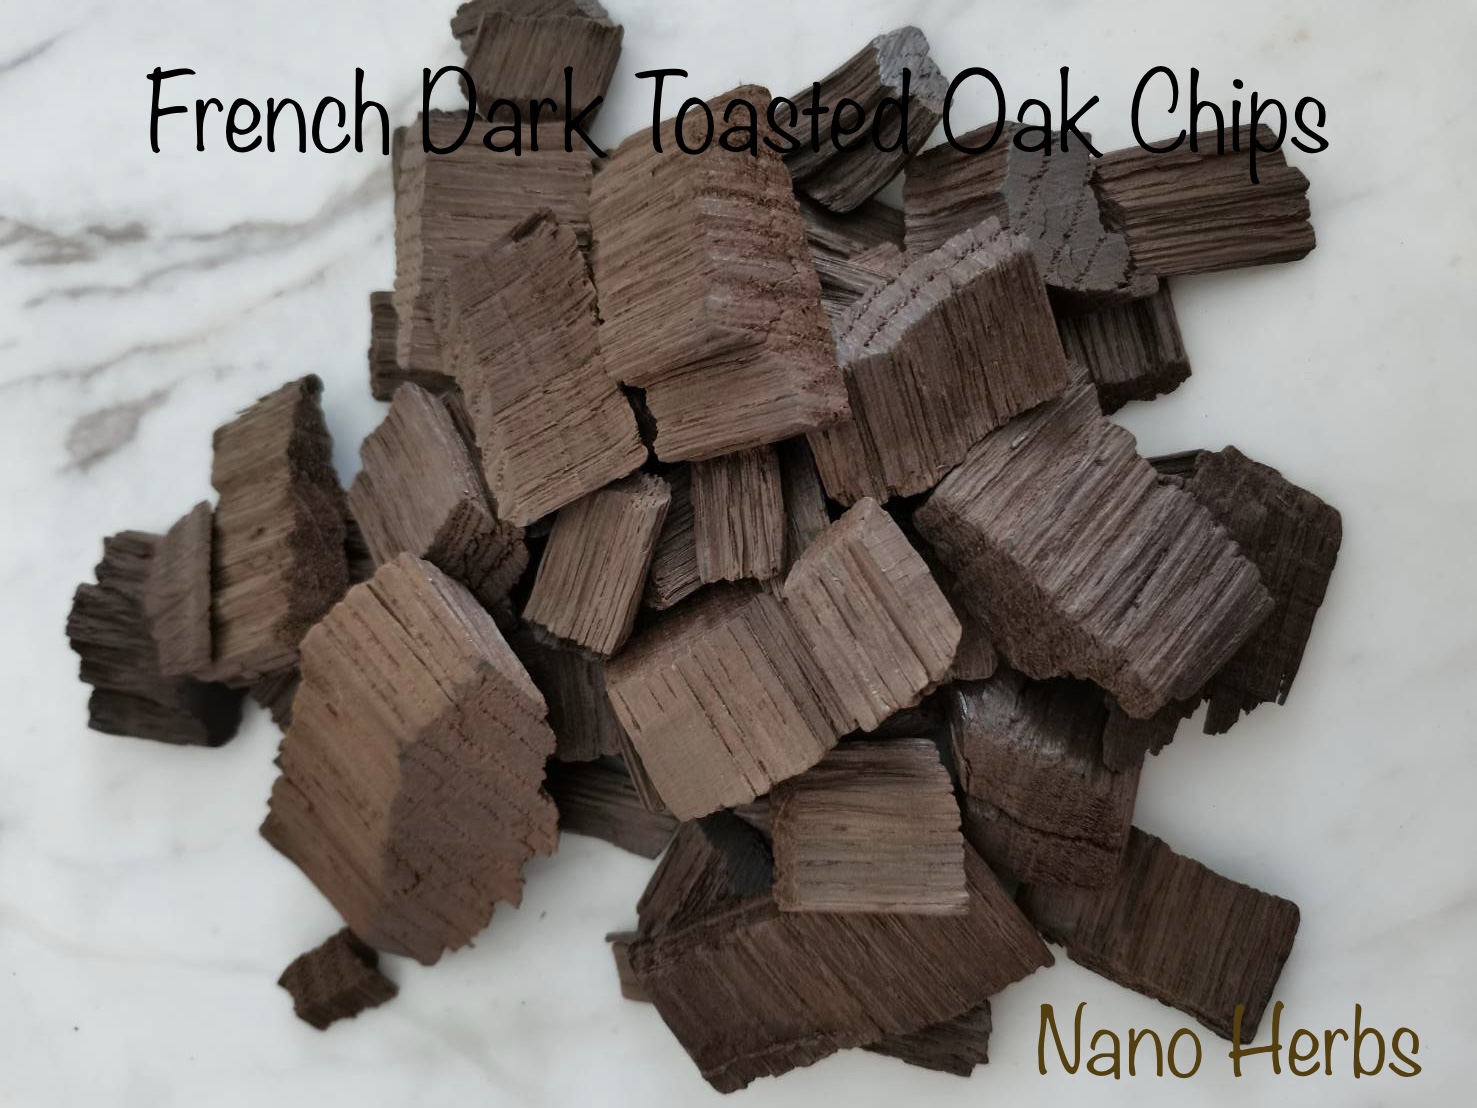 28 - 500กรัม: เกล็ดไม้โอ๊คฝรั่งเศสแบบคั่วเข้ม: French Dark Toasted Oak Chips For BBQ or Home Brewing Wine Making to Provide the Flavour of Oak Barrel